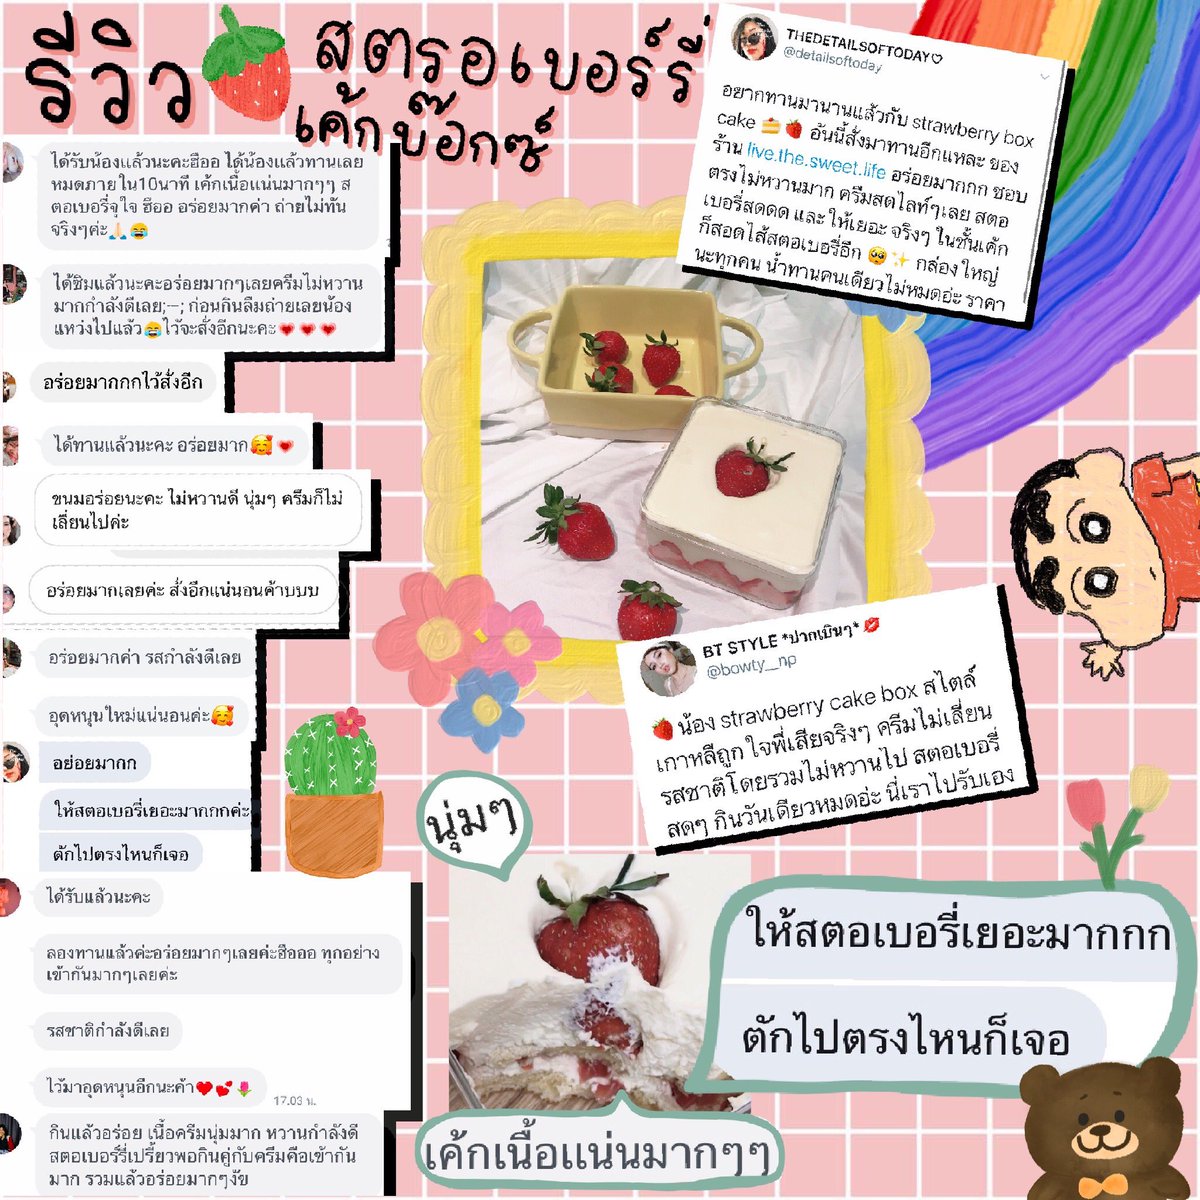 @mmkdishes @cuttolipta @Herepaolicious @hungryawejee @aroii @japaikin @chocoopal @nichaphatc ฝากรีหน่อยนะคะ🙏🏼 Strawberry cake box🍓 ครีมนุ่มๆละลายในปาก ไม่หวานเกินไป สตรอเบอร์รี่สดฉ่ำๆ นำเข้าจากเกาหลี มีทั้งข้างนอก และ ข้างในชั้นเค้ก😊🍓 @aroii กล่องใหญ่จุใจ ราคาเพียง 220บ./กล่อง #อร่อยไปแดก #อร่อยบอกต่อ #ตลาดนัดออนไลน์ประชาธิปไตย #ตลาดนัดประชาธิปไตย